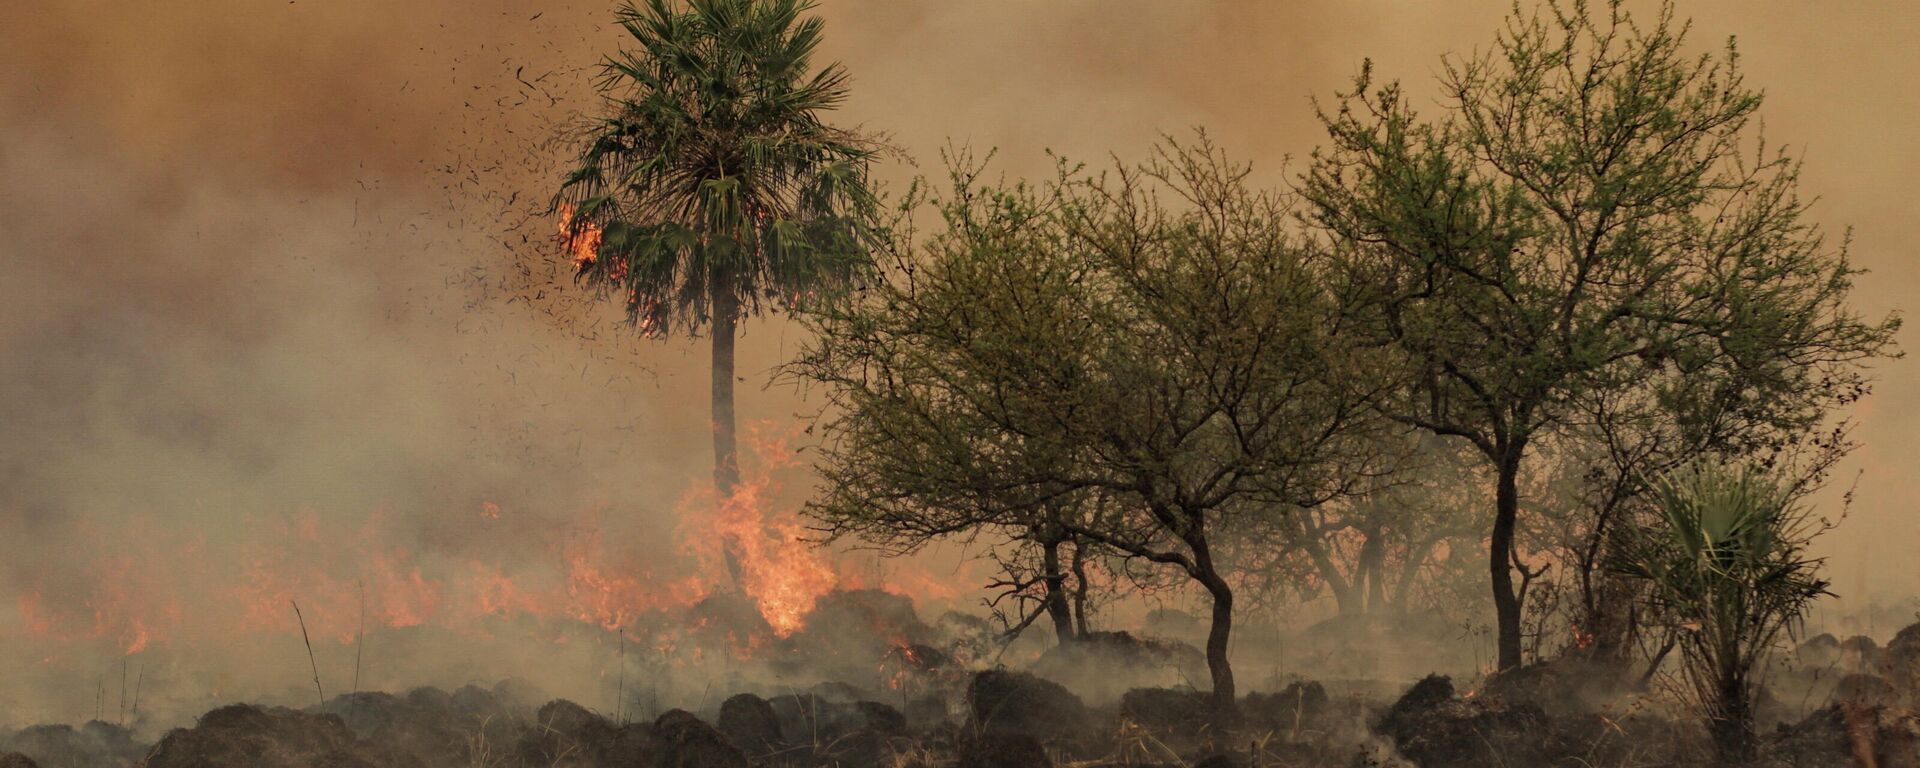 Arjantin'in kuzey doğusundaki Corrientes eyaletinde ocak ayının ortasından bu yana devam eden orman yangınlarında 785 bin hektardan fazla alanın tahrip olduğu açıklandı. - Sputnik Türkiye, 1920, 19.02.2022